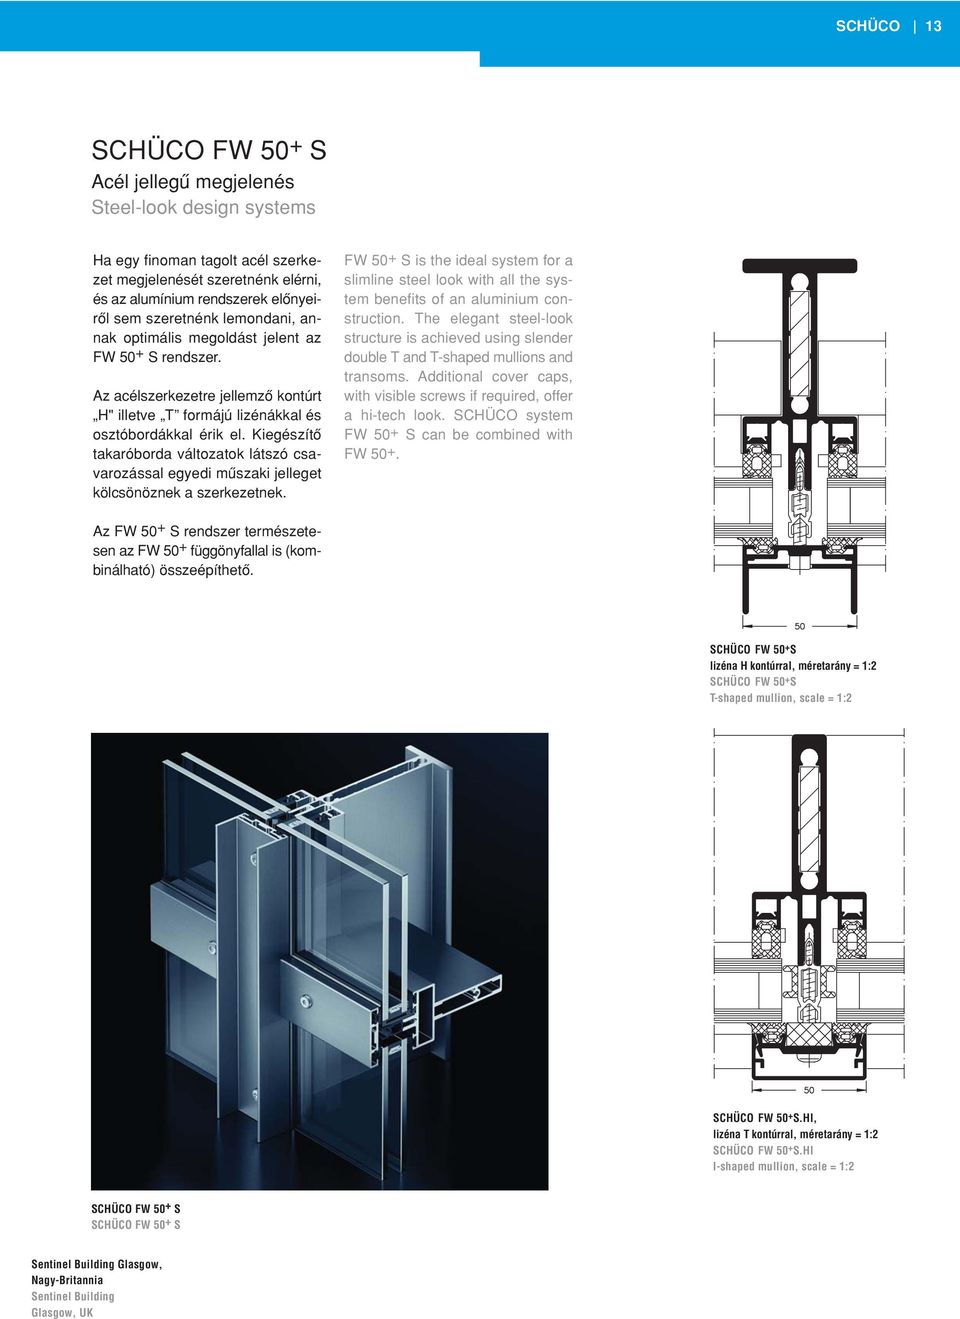 SCHÜCO alumínium függönyfal- és üvegtetôrendszerek SCHÜCO Aluminium Systems  for Façades and Skylights - PDF Ingyenes letöltés